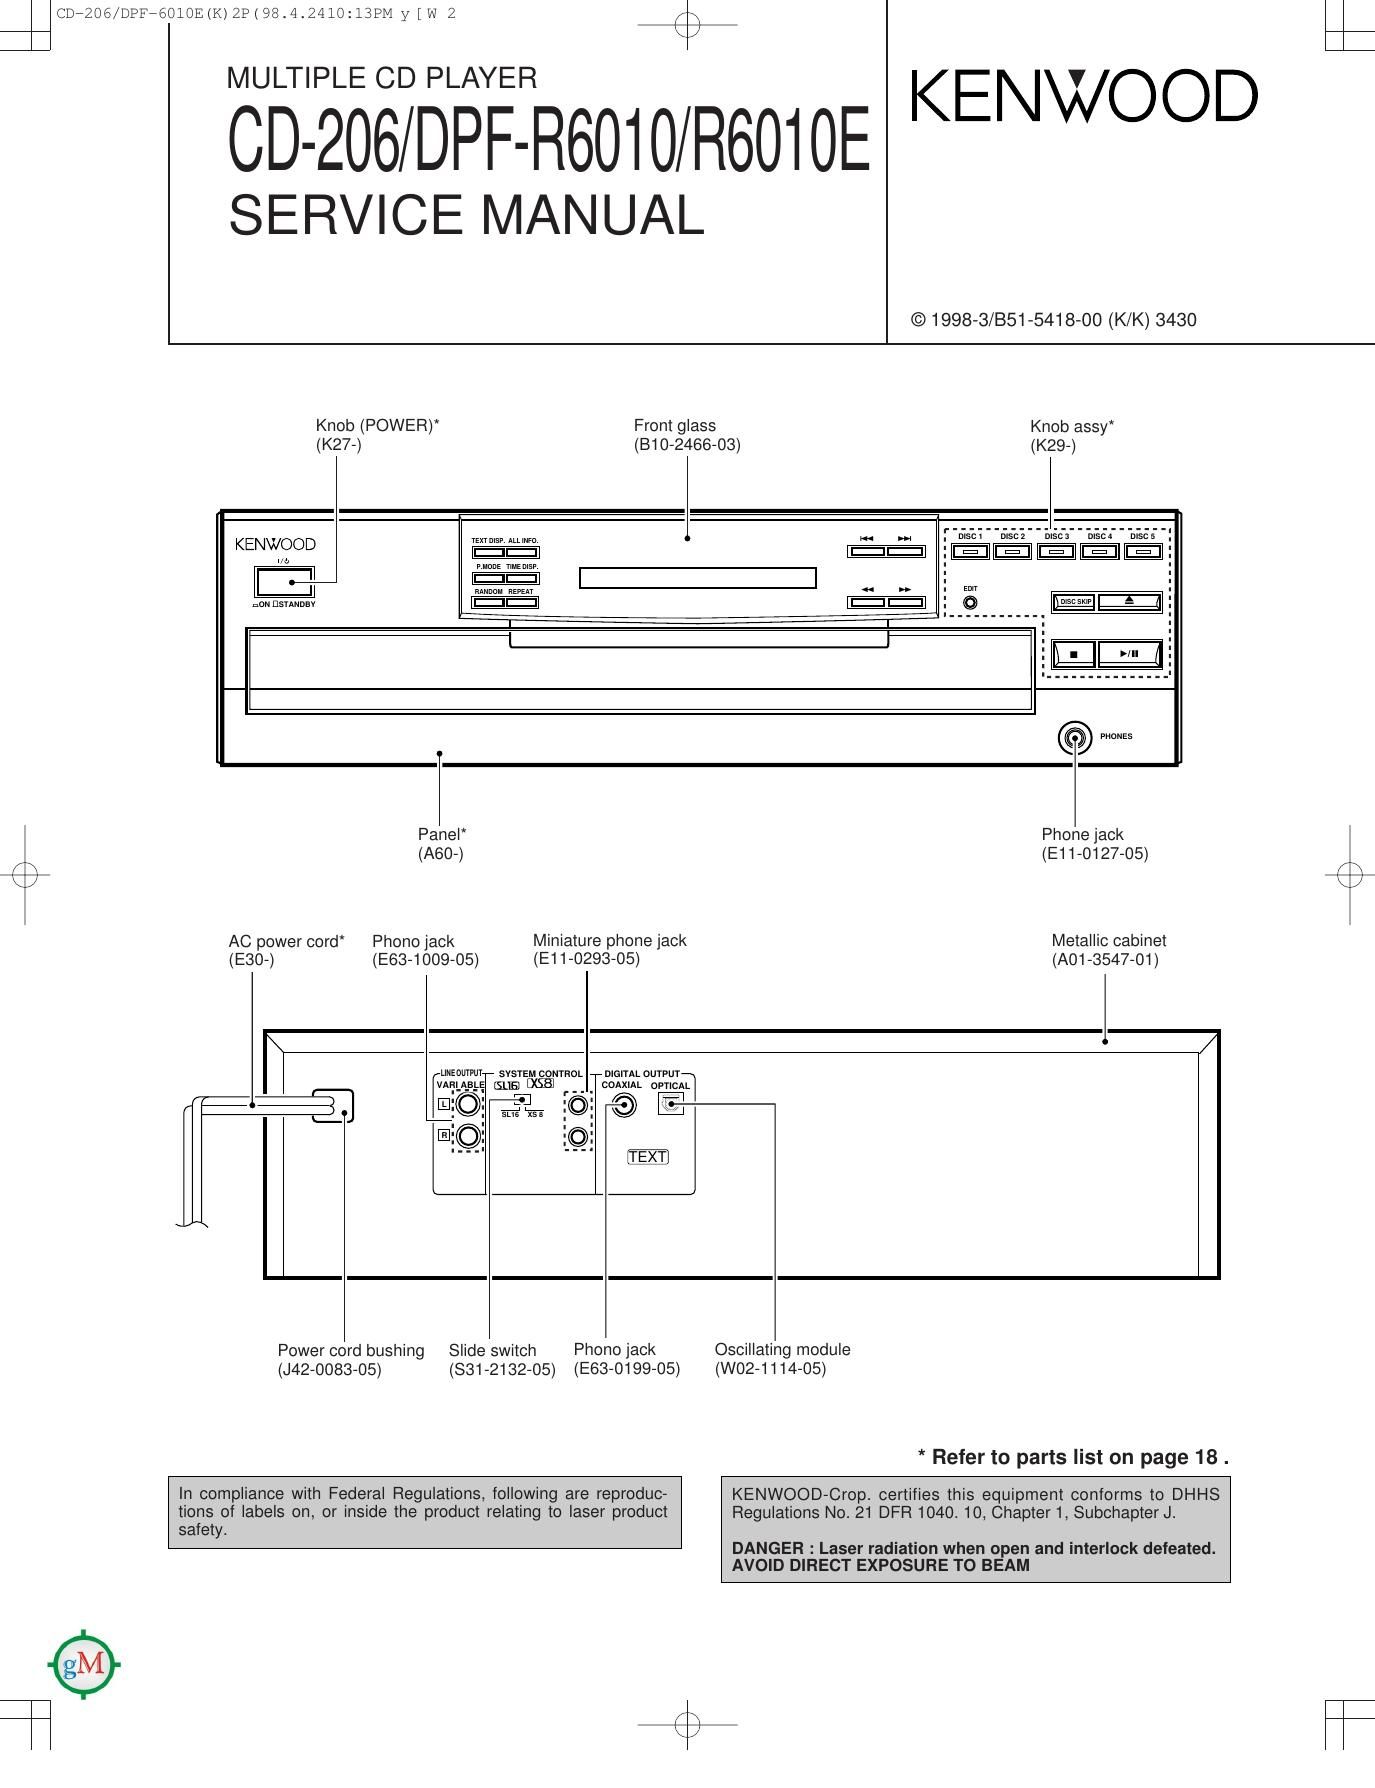 Kenwood CD 206 Service Manual